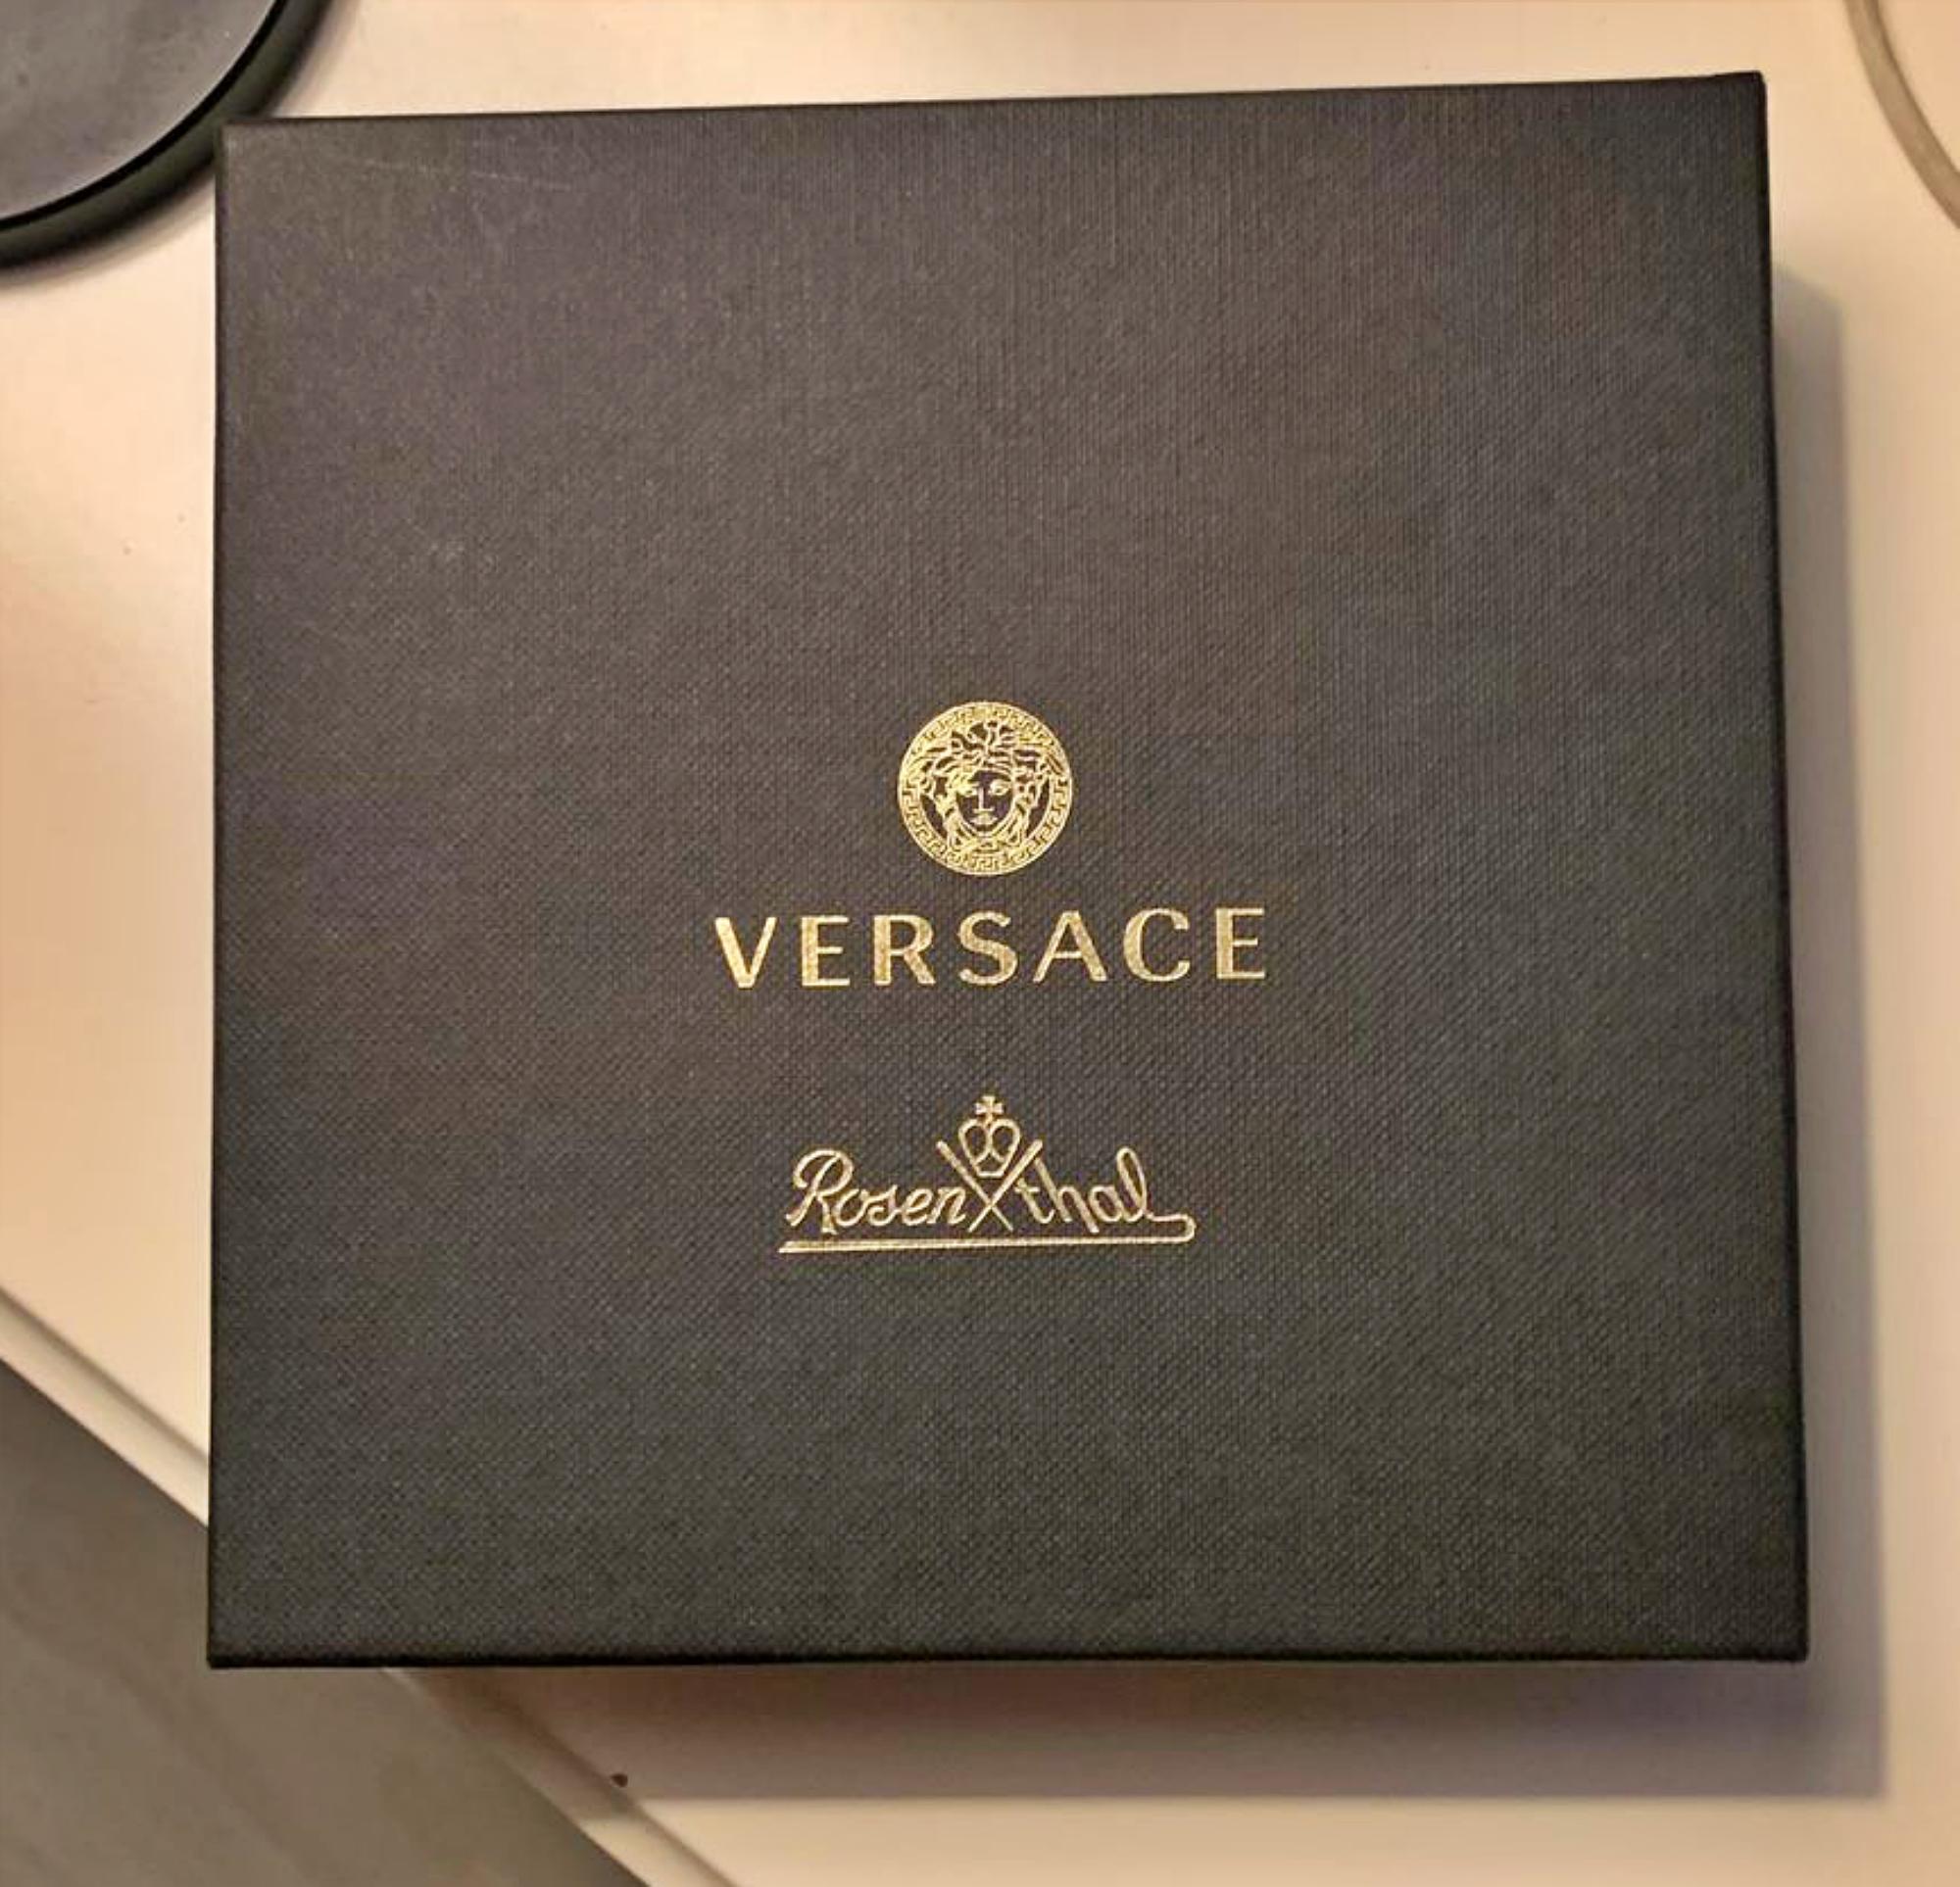 NEW Versace Home
Jungle Collection'S Tablett
Brandneues Tablett in der Versace-Originalverpackung mit Echtheitszertifikat

Bringen Sie italienischen Glamour auf Ihren Tisch mit der neuesten Jungle Animalier Kollektion von Versace aus feinem